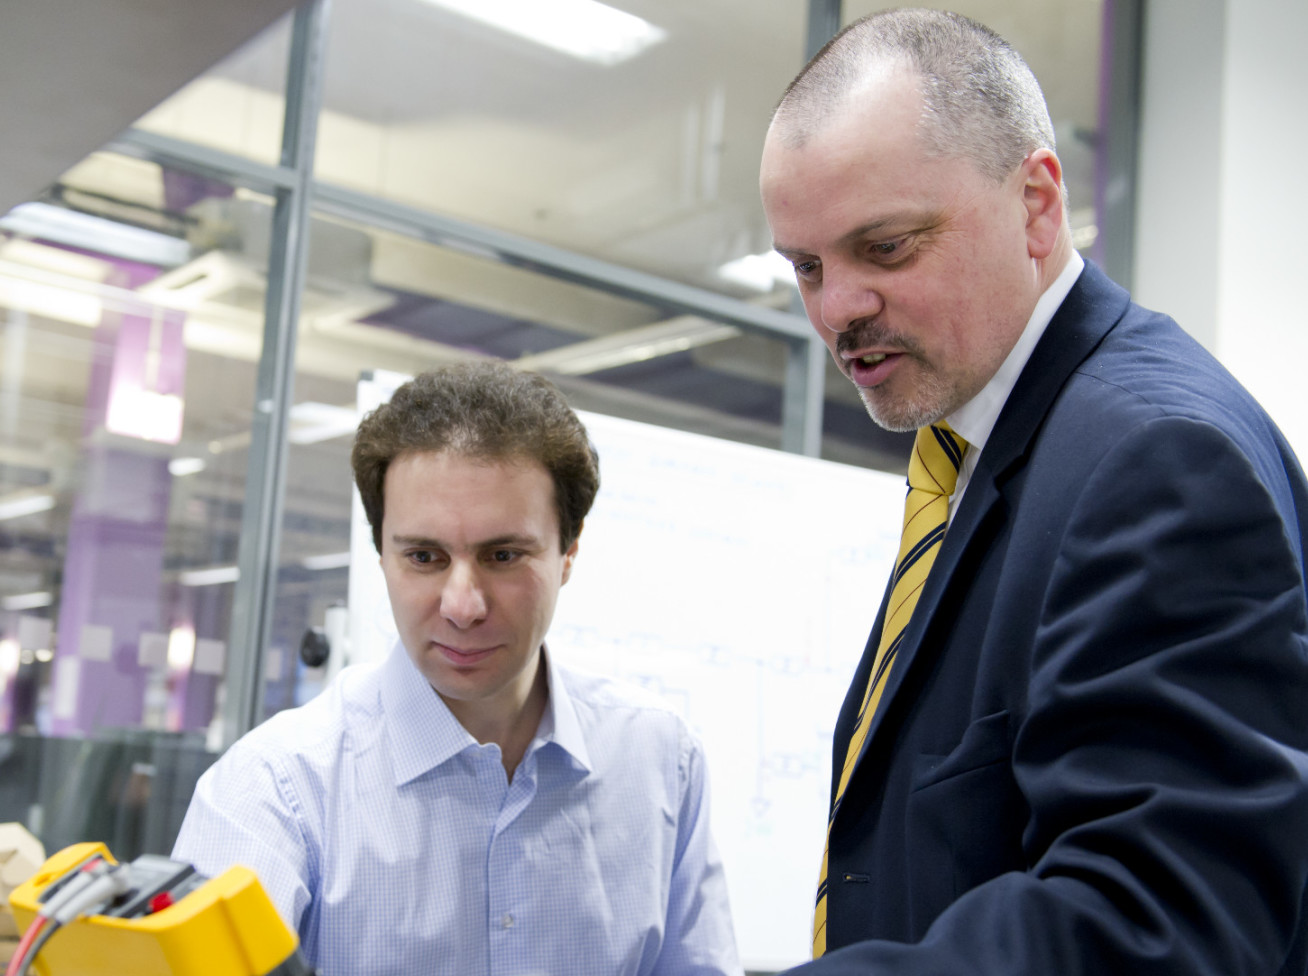 Professor Tim Green shows a colleague technical equipment